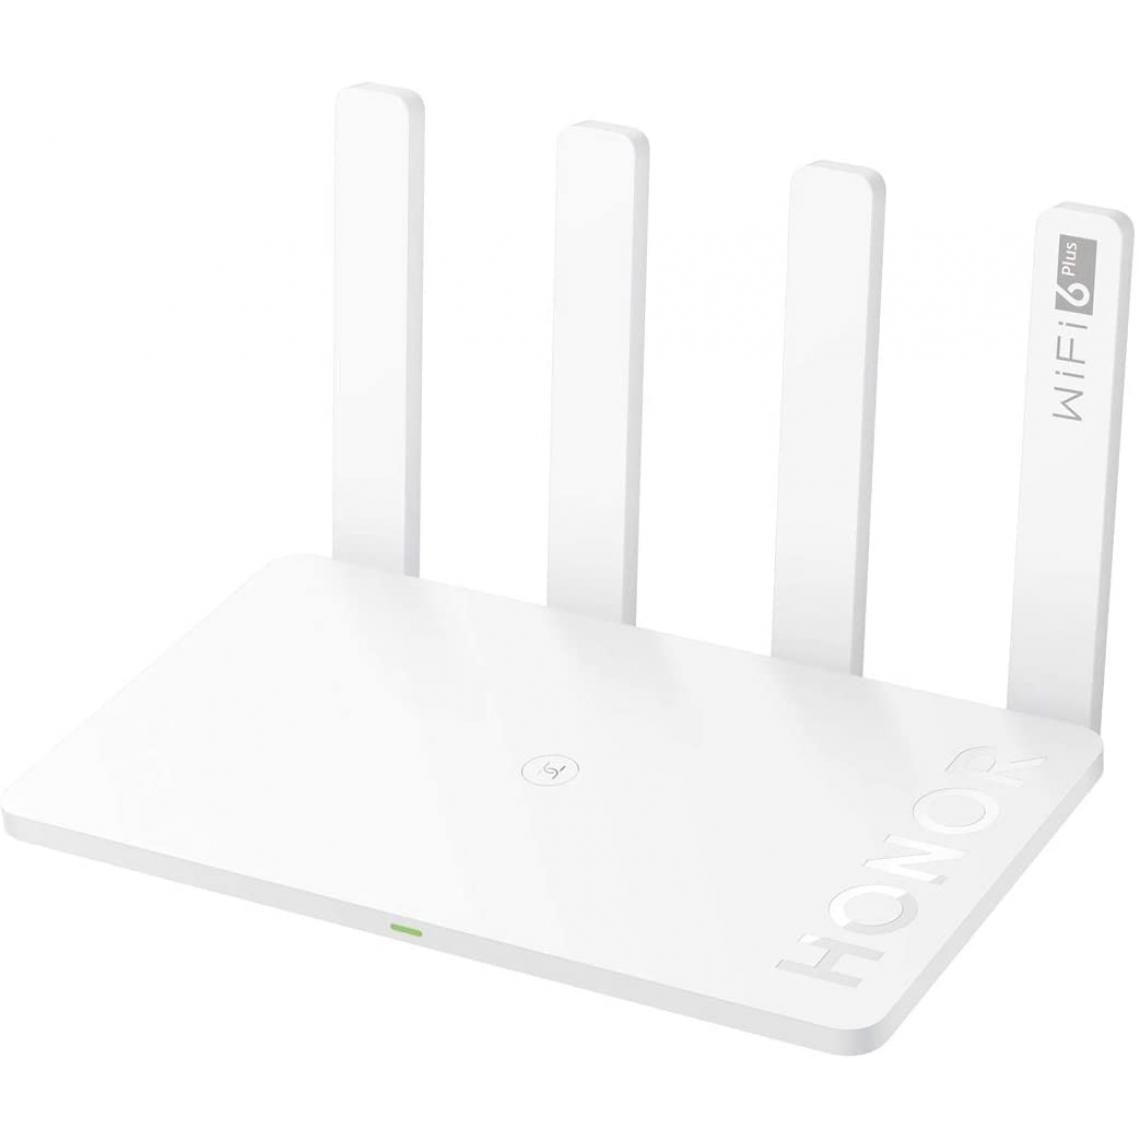 Honor - HONOR Routeur 3 Huawei Routeur sans Fil Gigabit WiFi Double Bande 2,4 GHz et 5 GHz avec Vitesse Jusqu'à 3000 Mbps, 4 Antennes 5 DBi et Ports Ethernet LAN/WAN sans Configuration - Modem / Routeur / Points d'accès